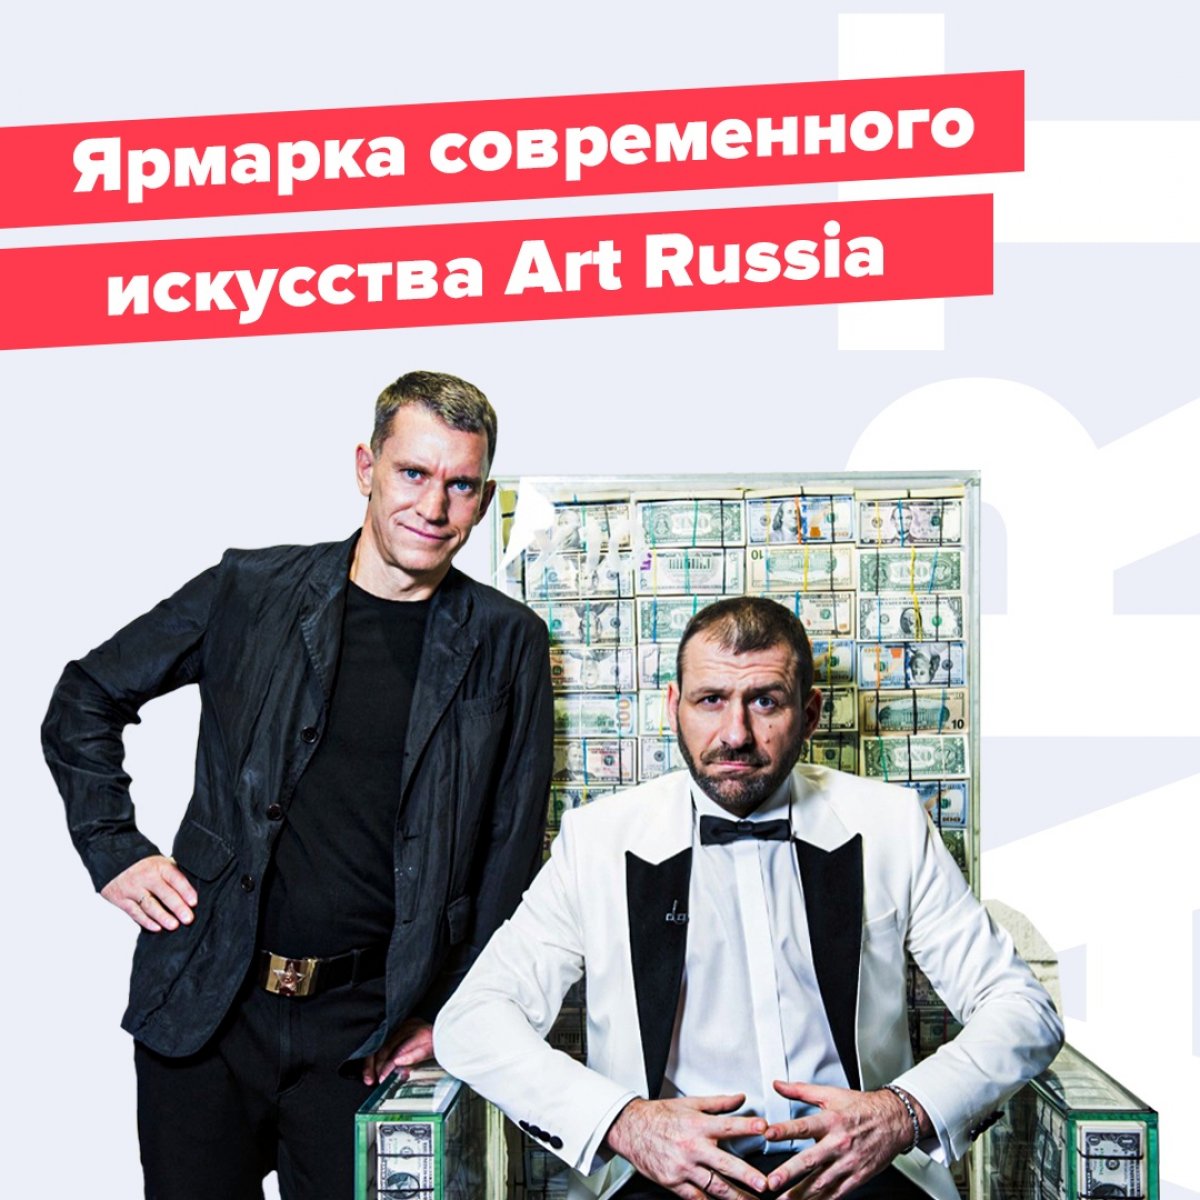 💡 С 20 по 23 февраля 2020 года в Гостином дворе впервые пройдет крупнейшая ярмарка современного искусства ART RUSSIA, запущенный Synergy Art. Более 80-ти художников, галерей и образовательных программ представят на ярмарке свои персональные стенды.